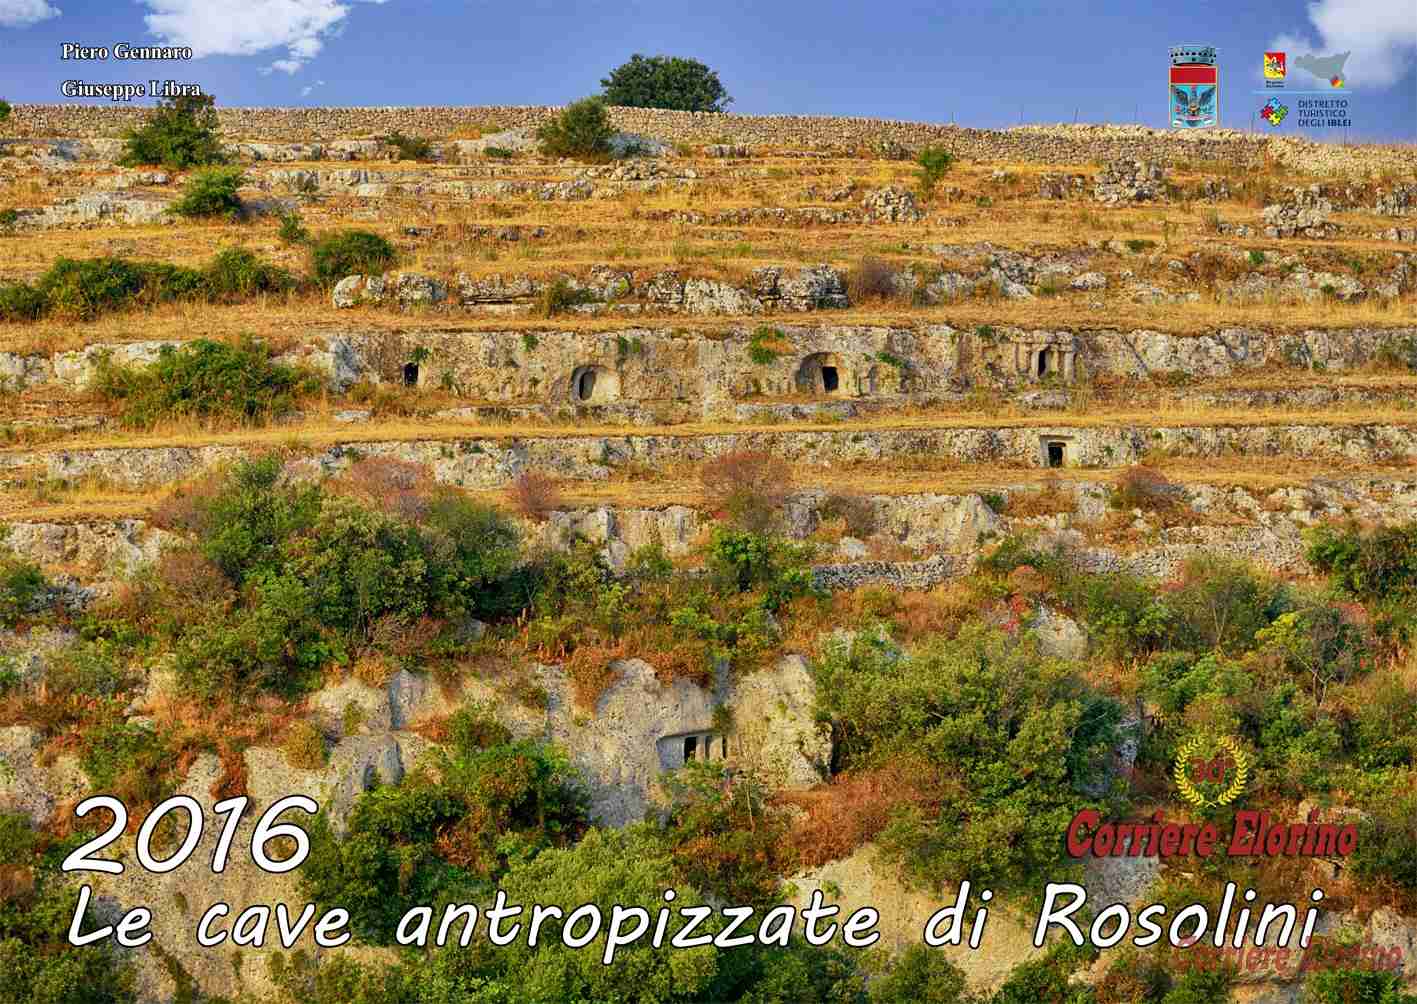 Venerdì 18 dicembre presentazione del calendario fotografico “Le cave antropizzate di Rosolini”